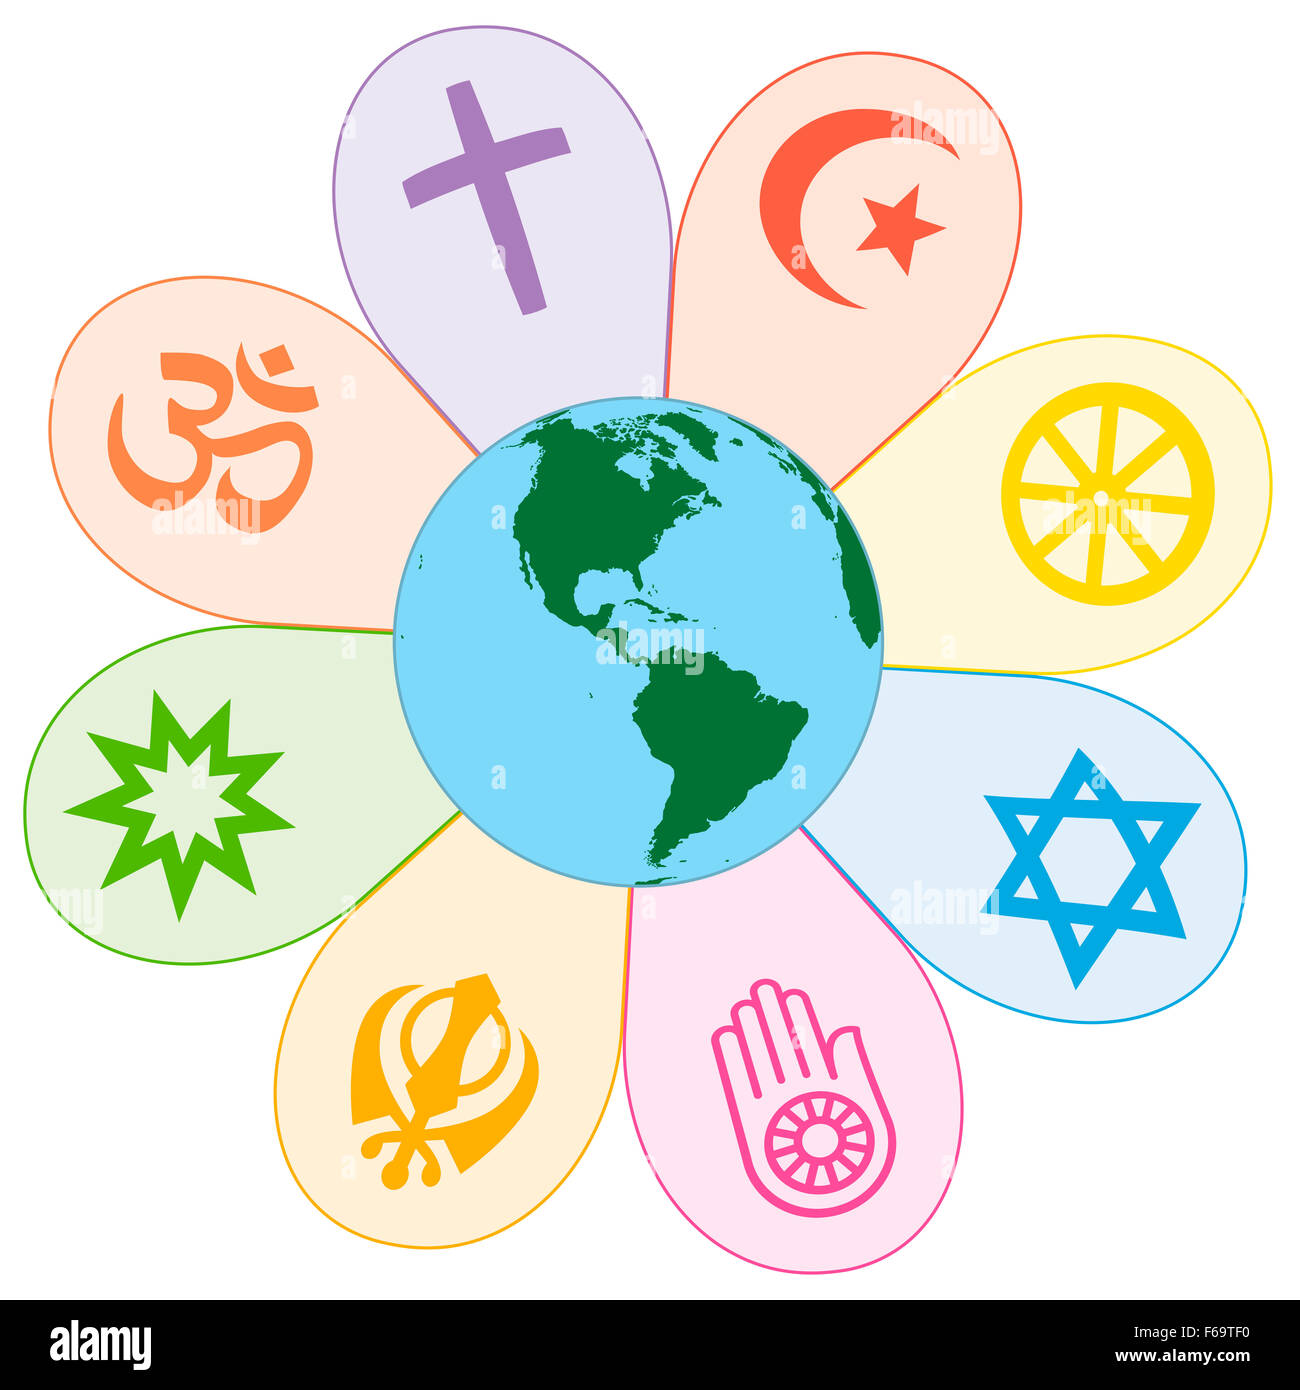 Le religioni del mondo uniti su un fiore coloratissimo con il pianeta terra in centro. Immagine su sfondo bianco. Foto Stock